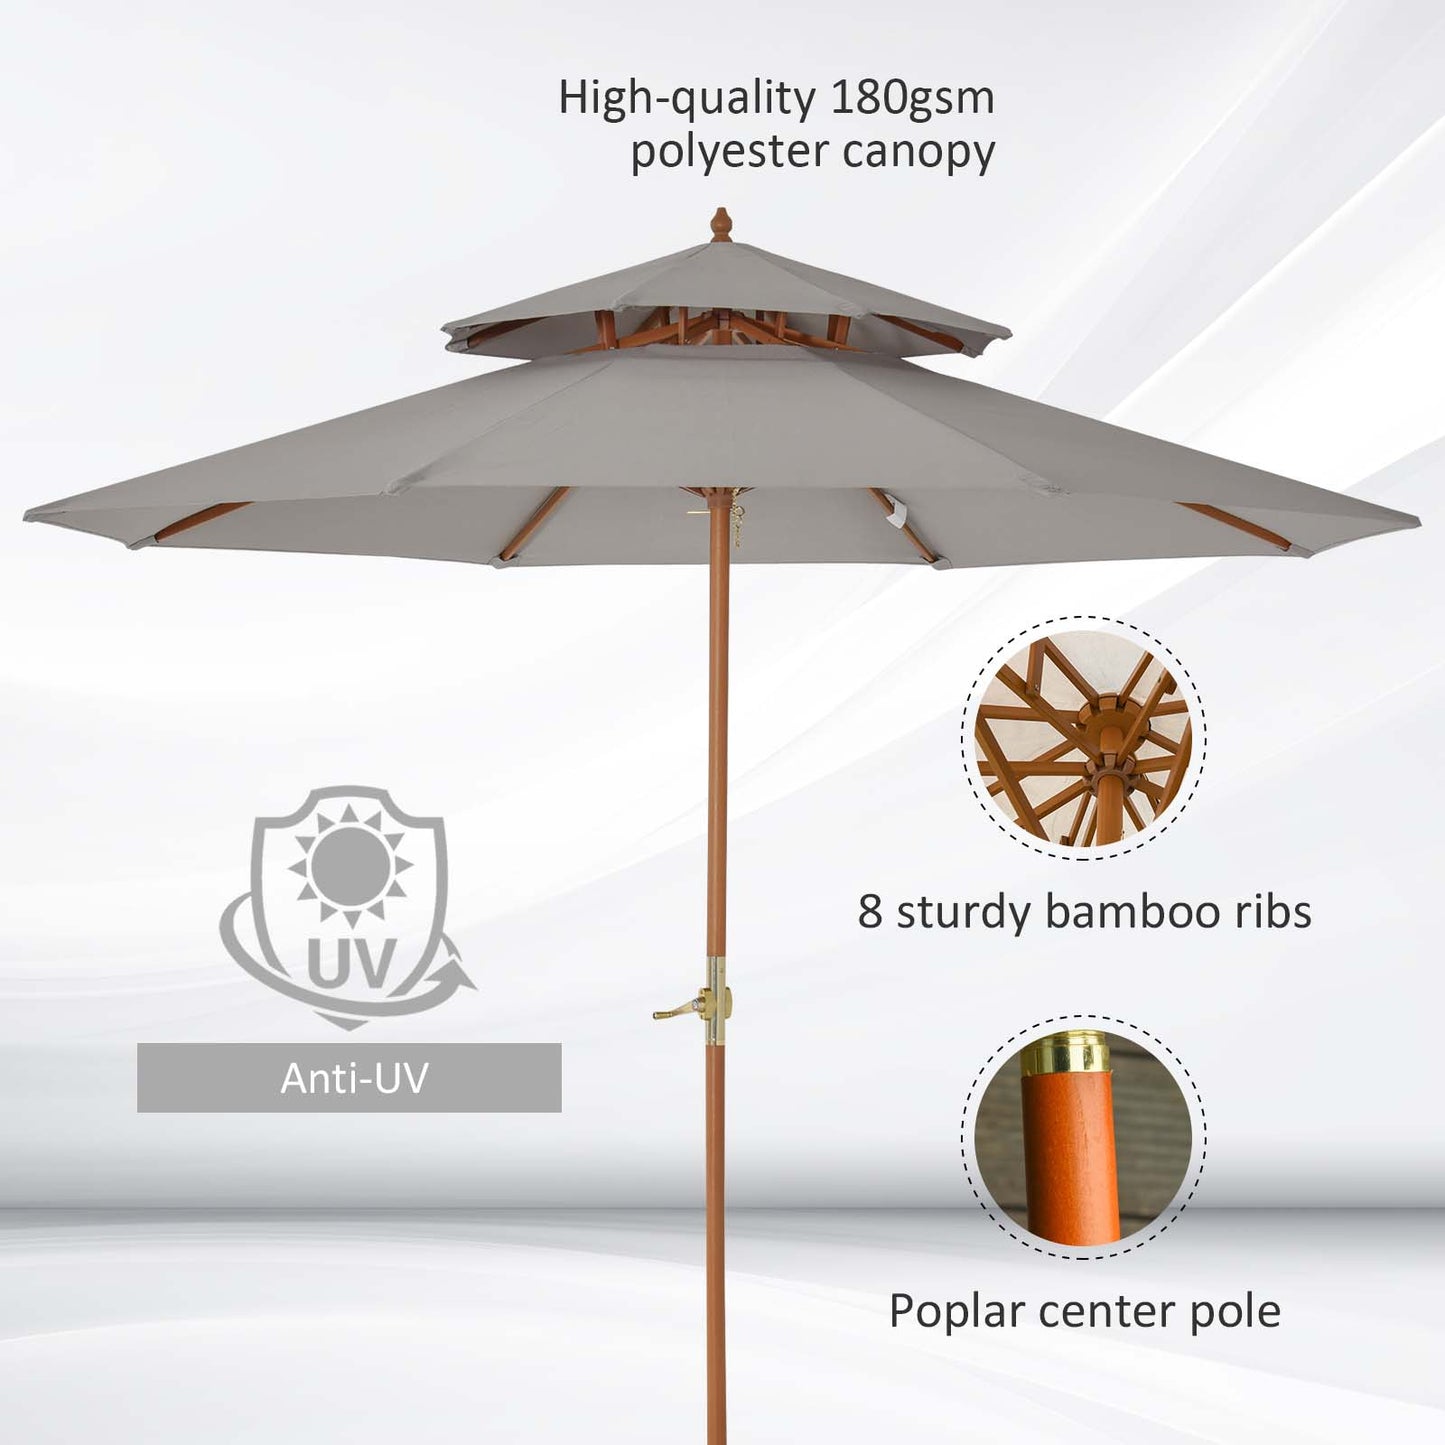 Outsunny 2.7 m Double Tier Outdoor Patio Garden Sun Umbrella Sunshade Wooden Parasol Grey Wood Shade Canopy